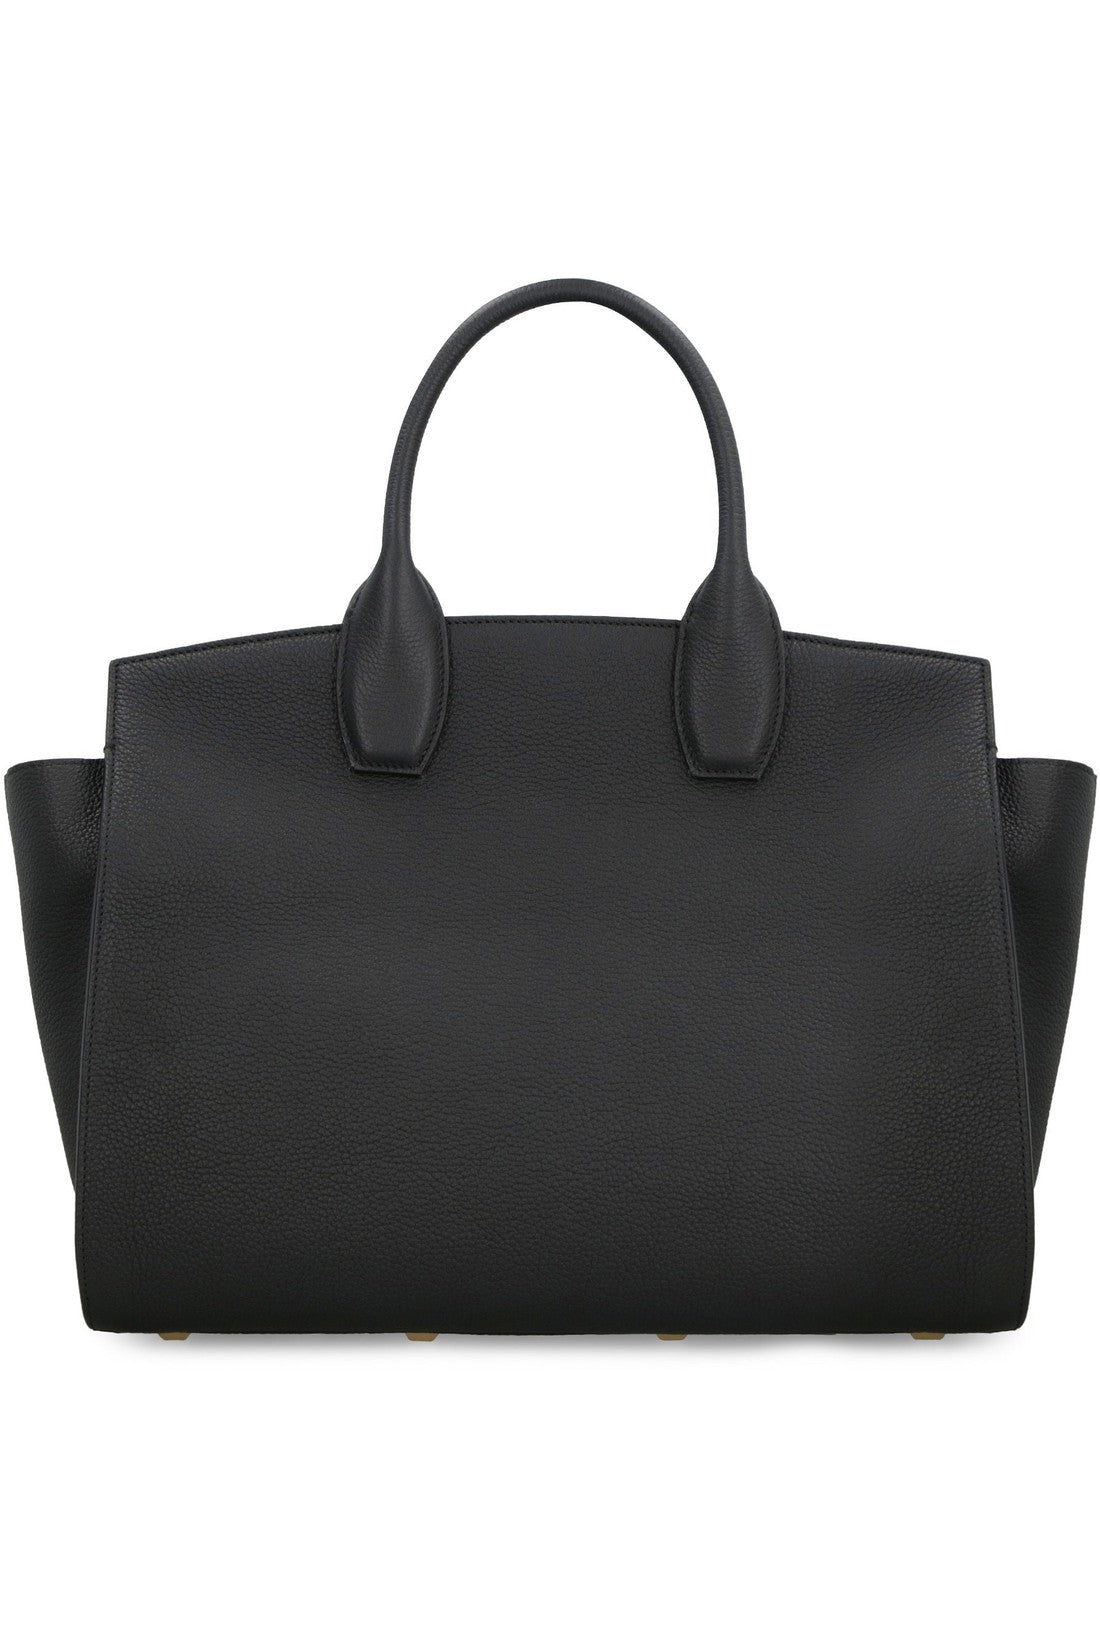 FERRAGAMO-OUTLET-SALE-Studio Soft Leather handbag-ARCHIVIST